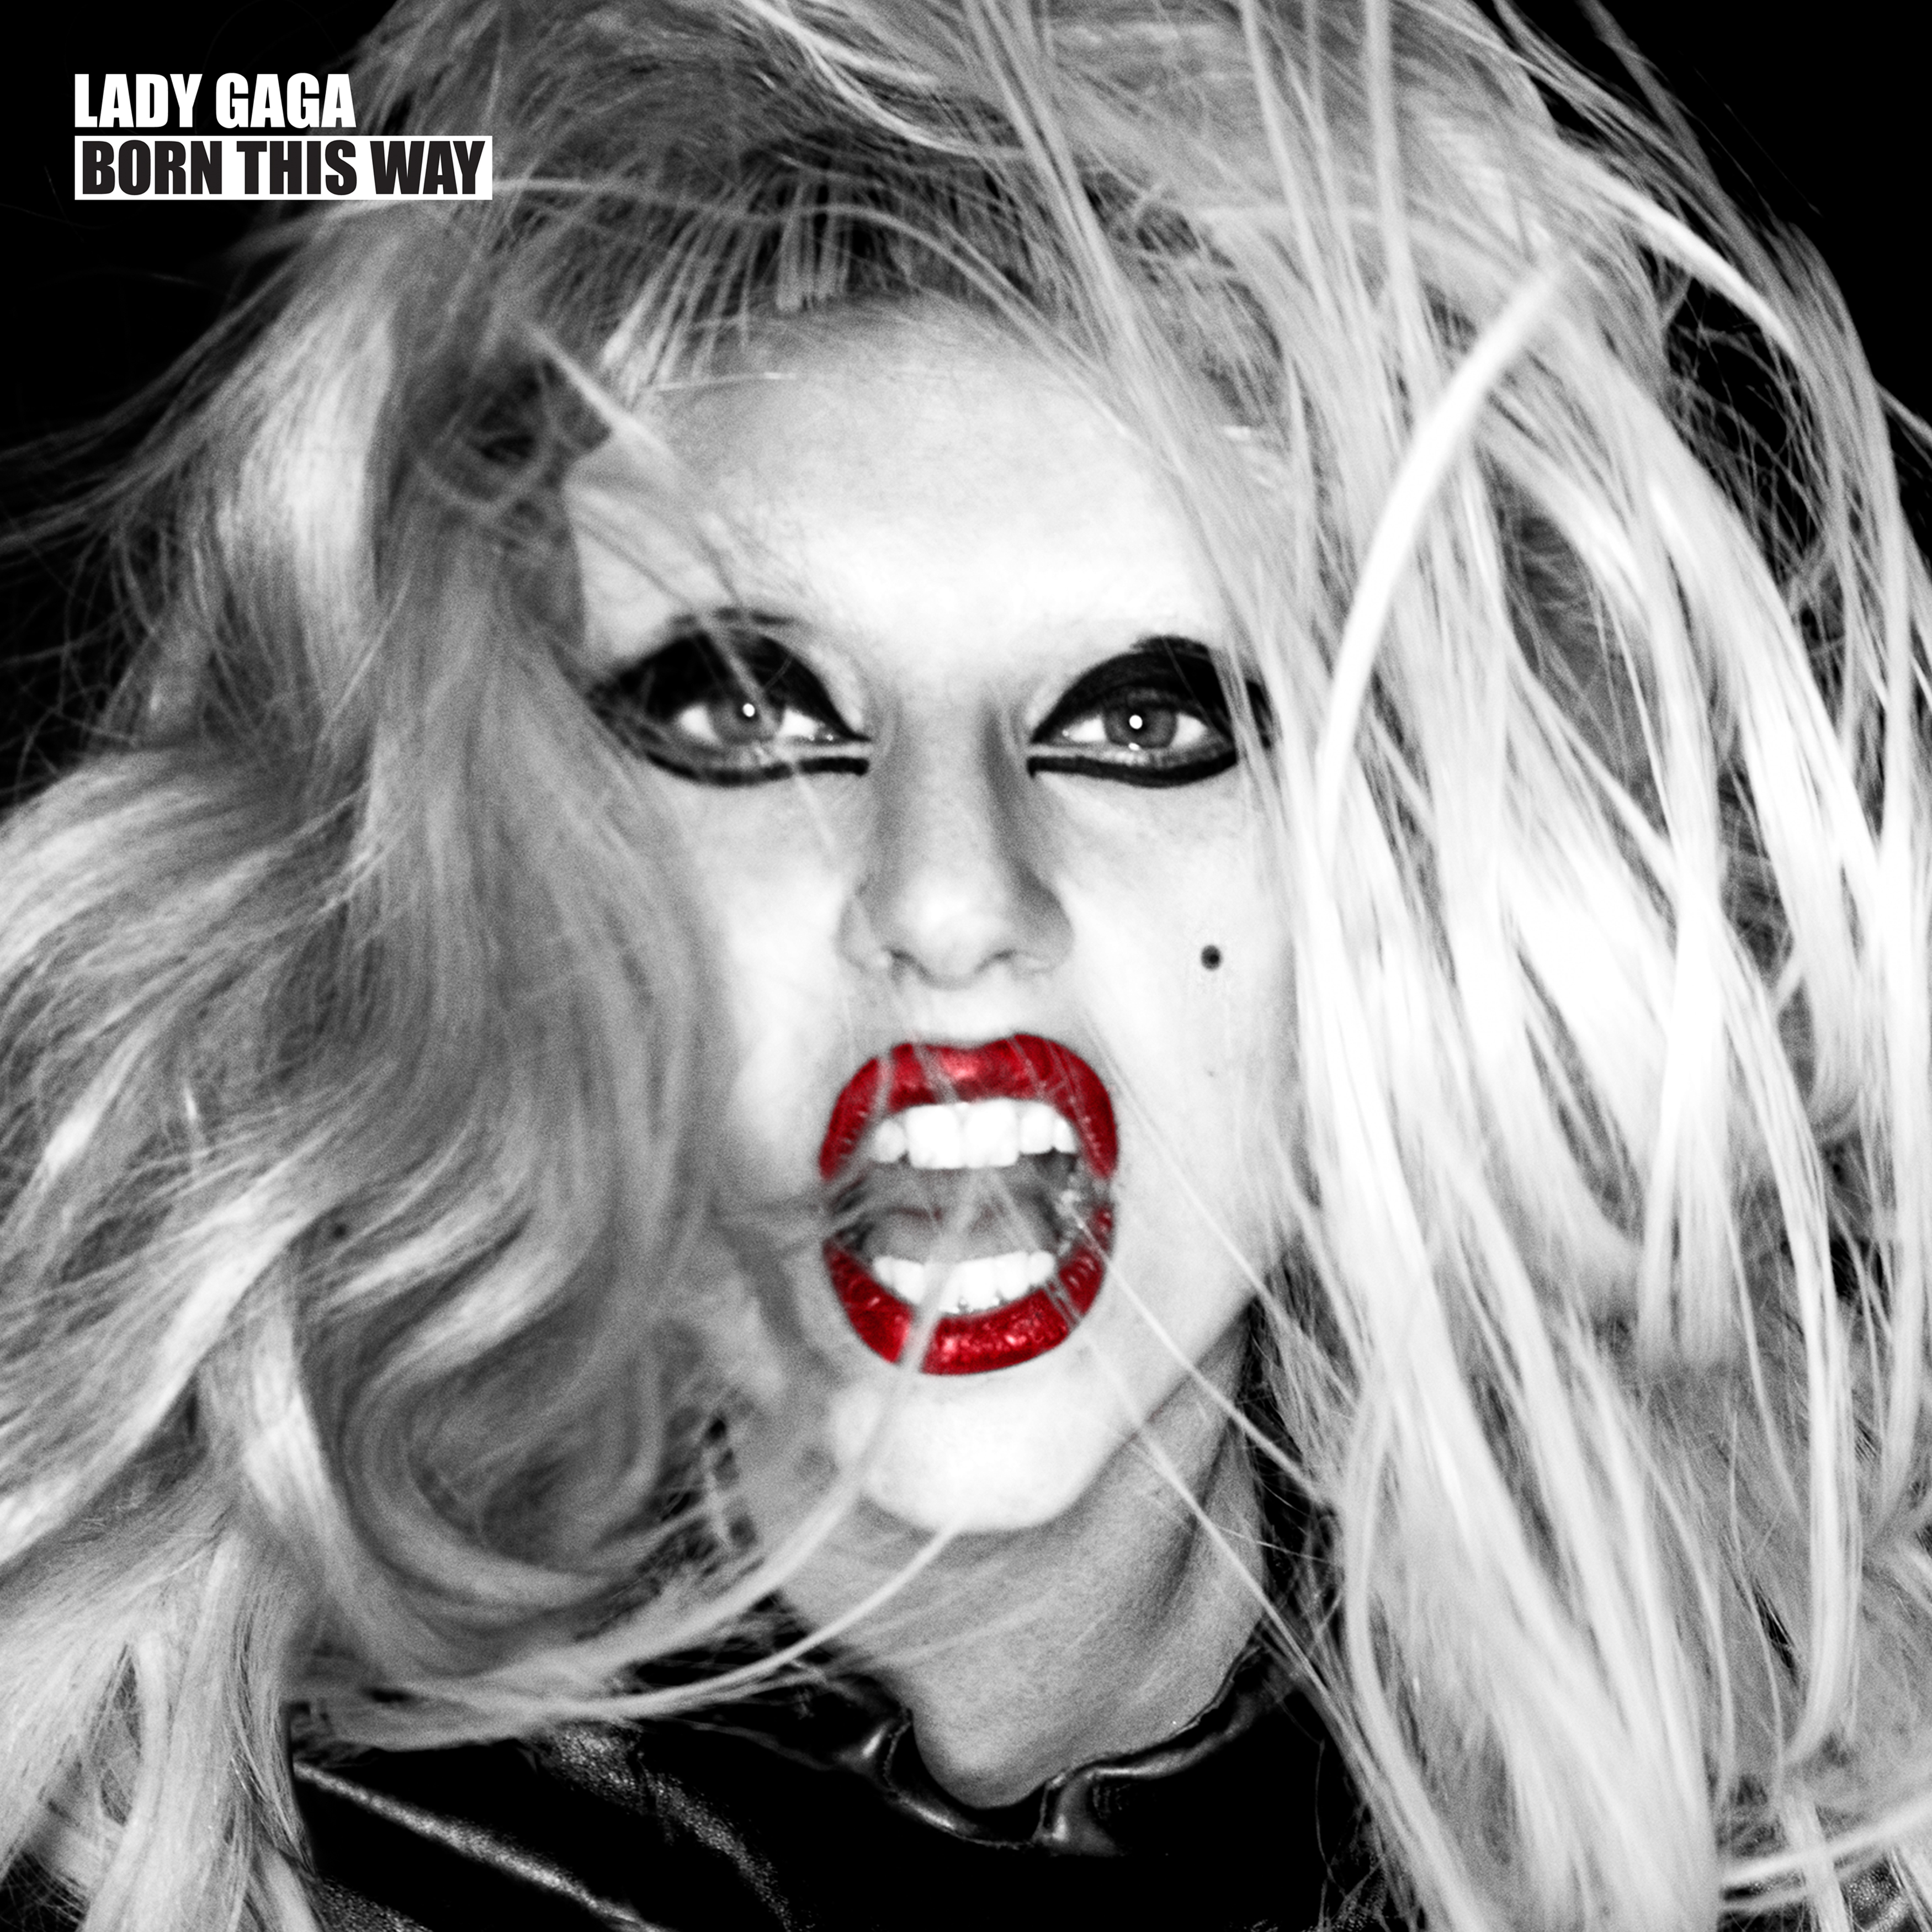 Born This Way album cover